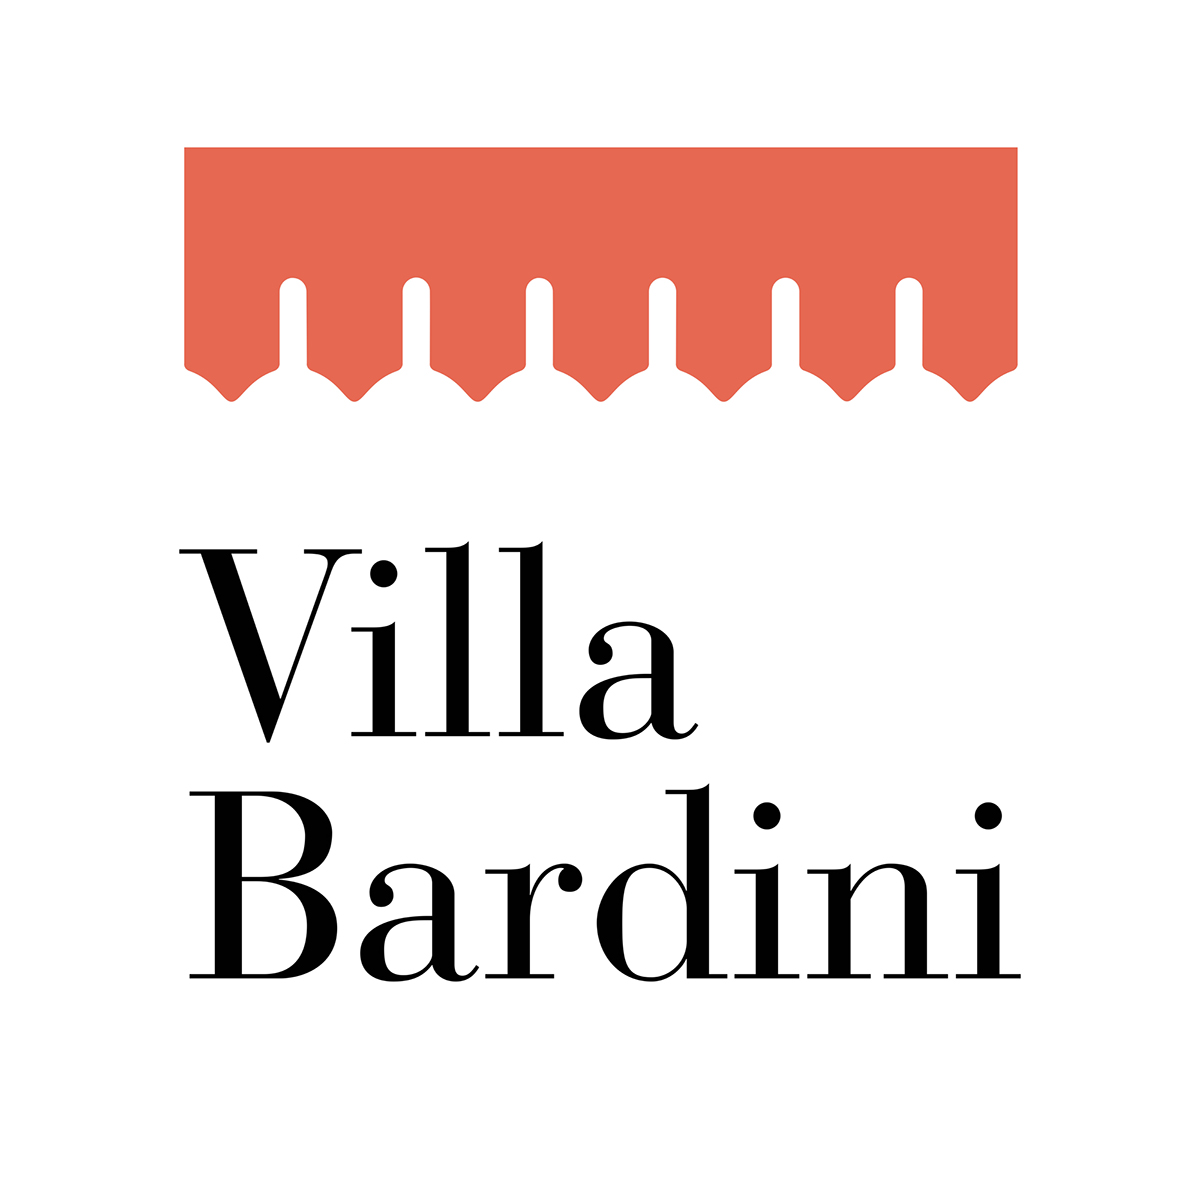 Vila Bardini villa badini peyron Giardini logo marchio bellezza firenze contest